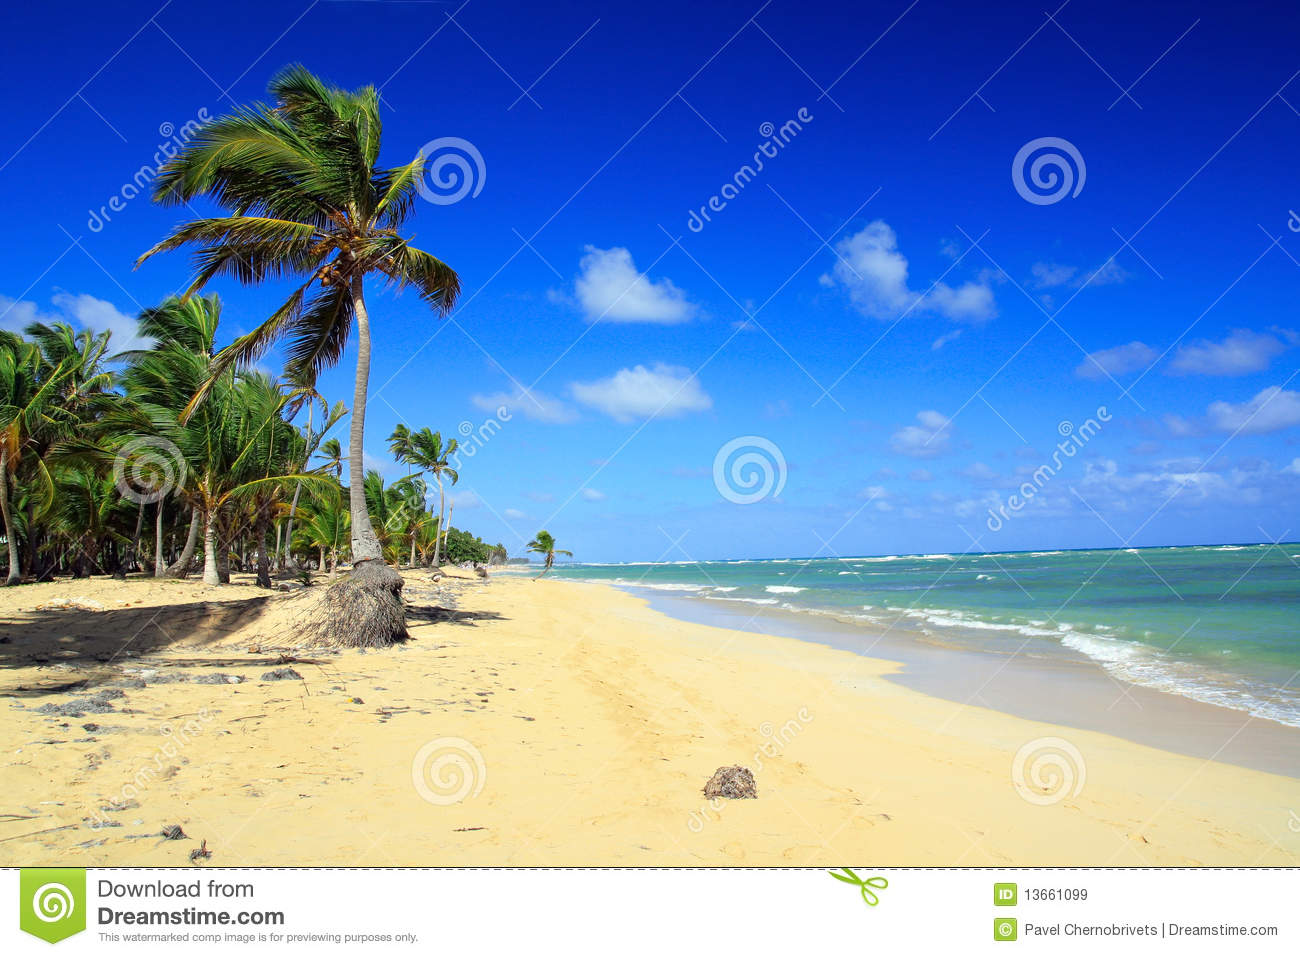 Archivo Libres De Regal As Palmas En La Playa Del Caribe Punta Cana